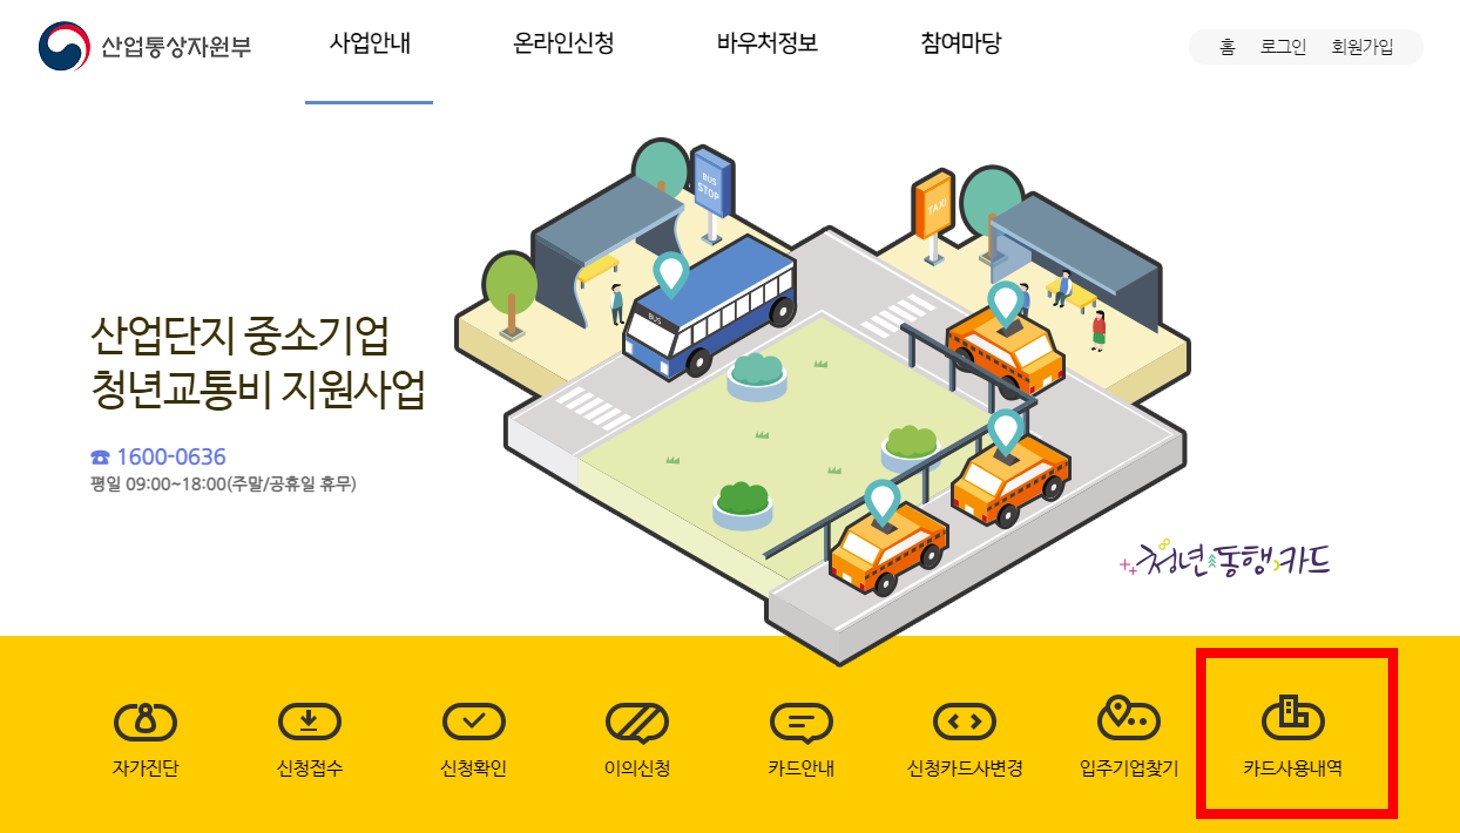 한국산어단지공단 홈페이지 메인 화면